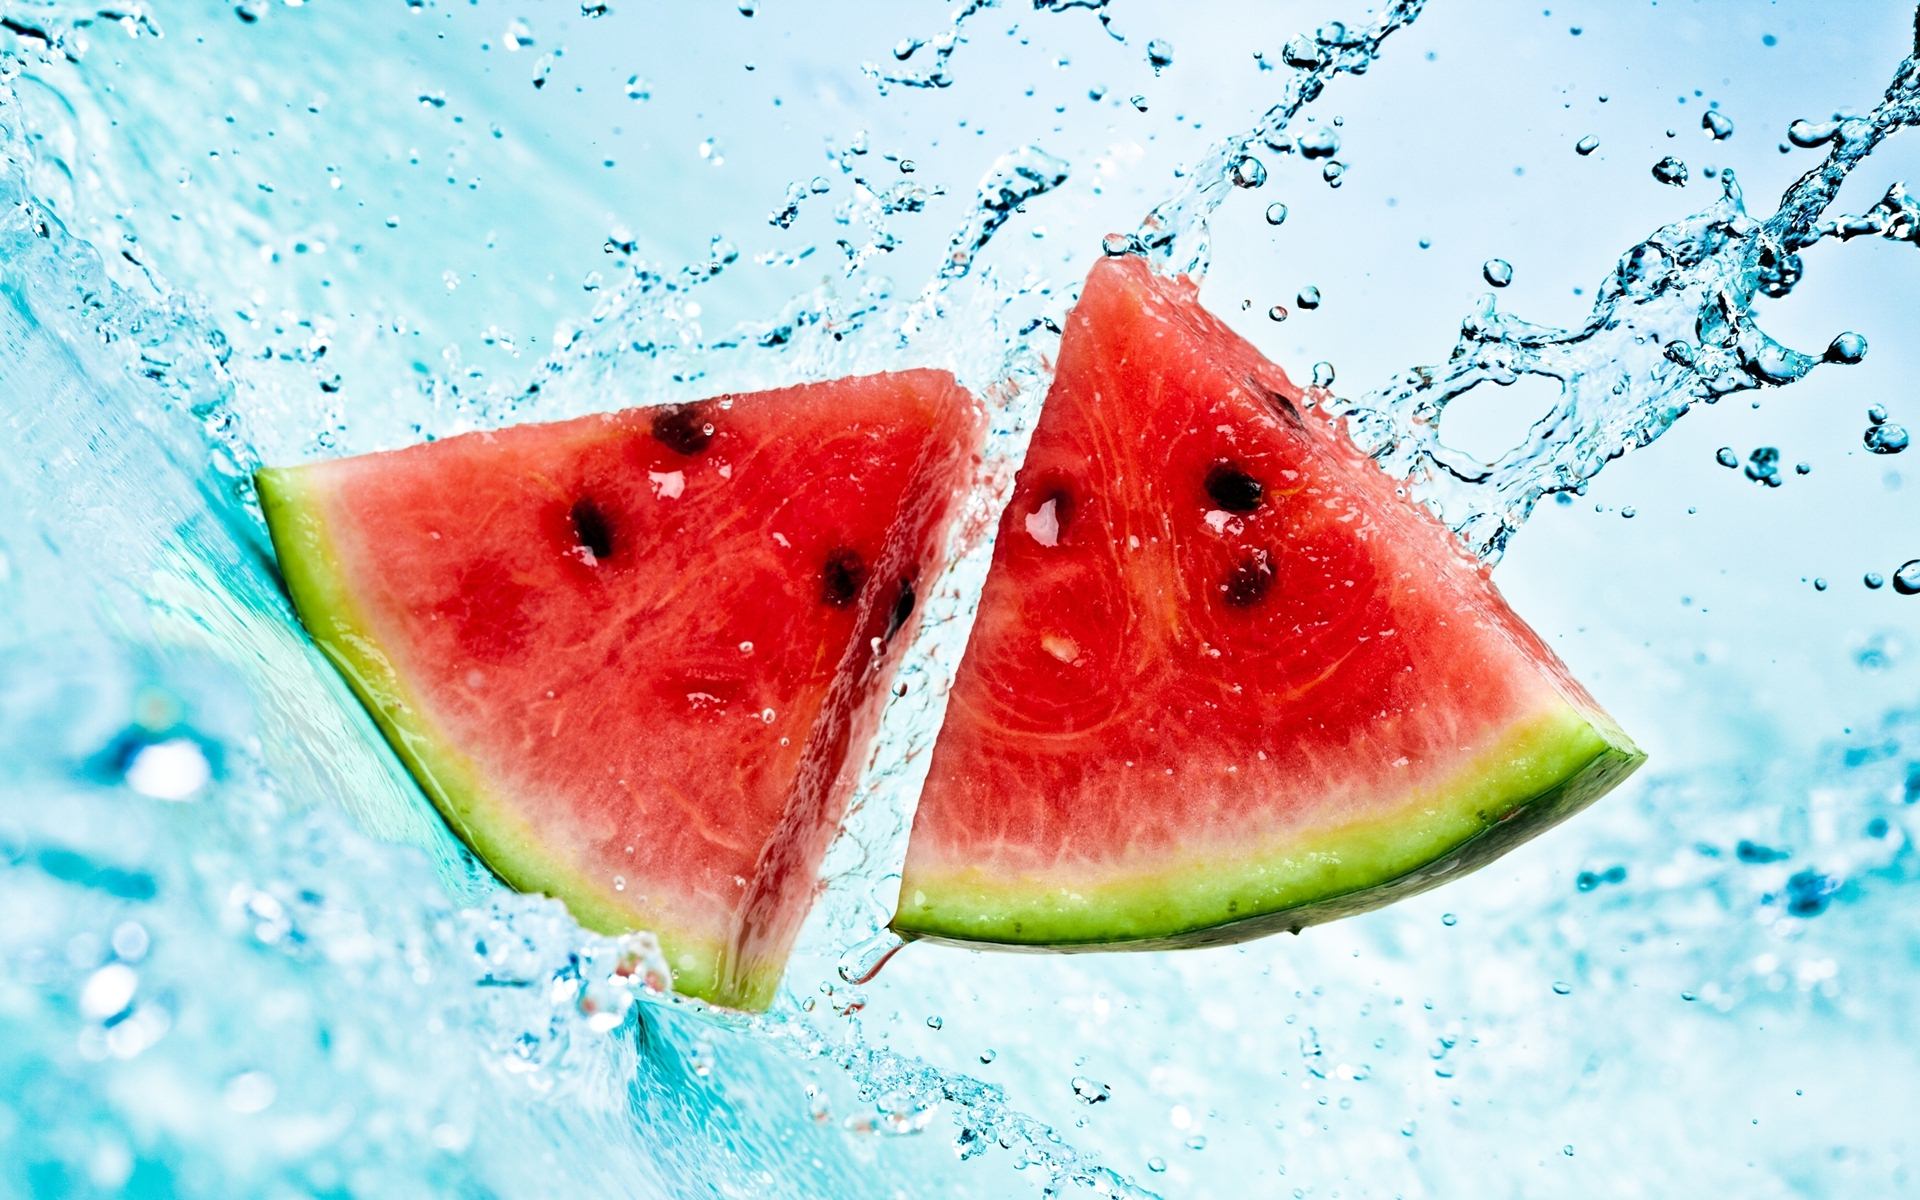 Watermelon Triangle Slice Wallpaper